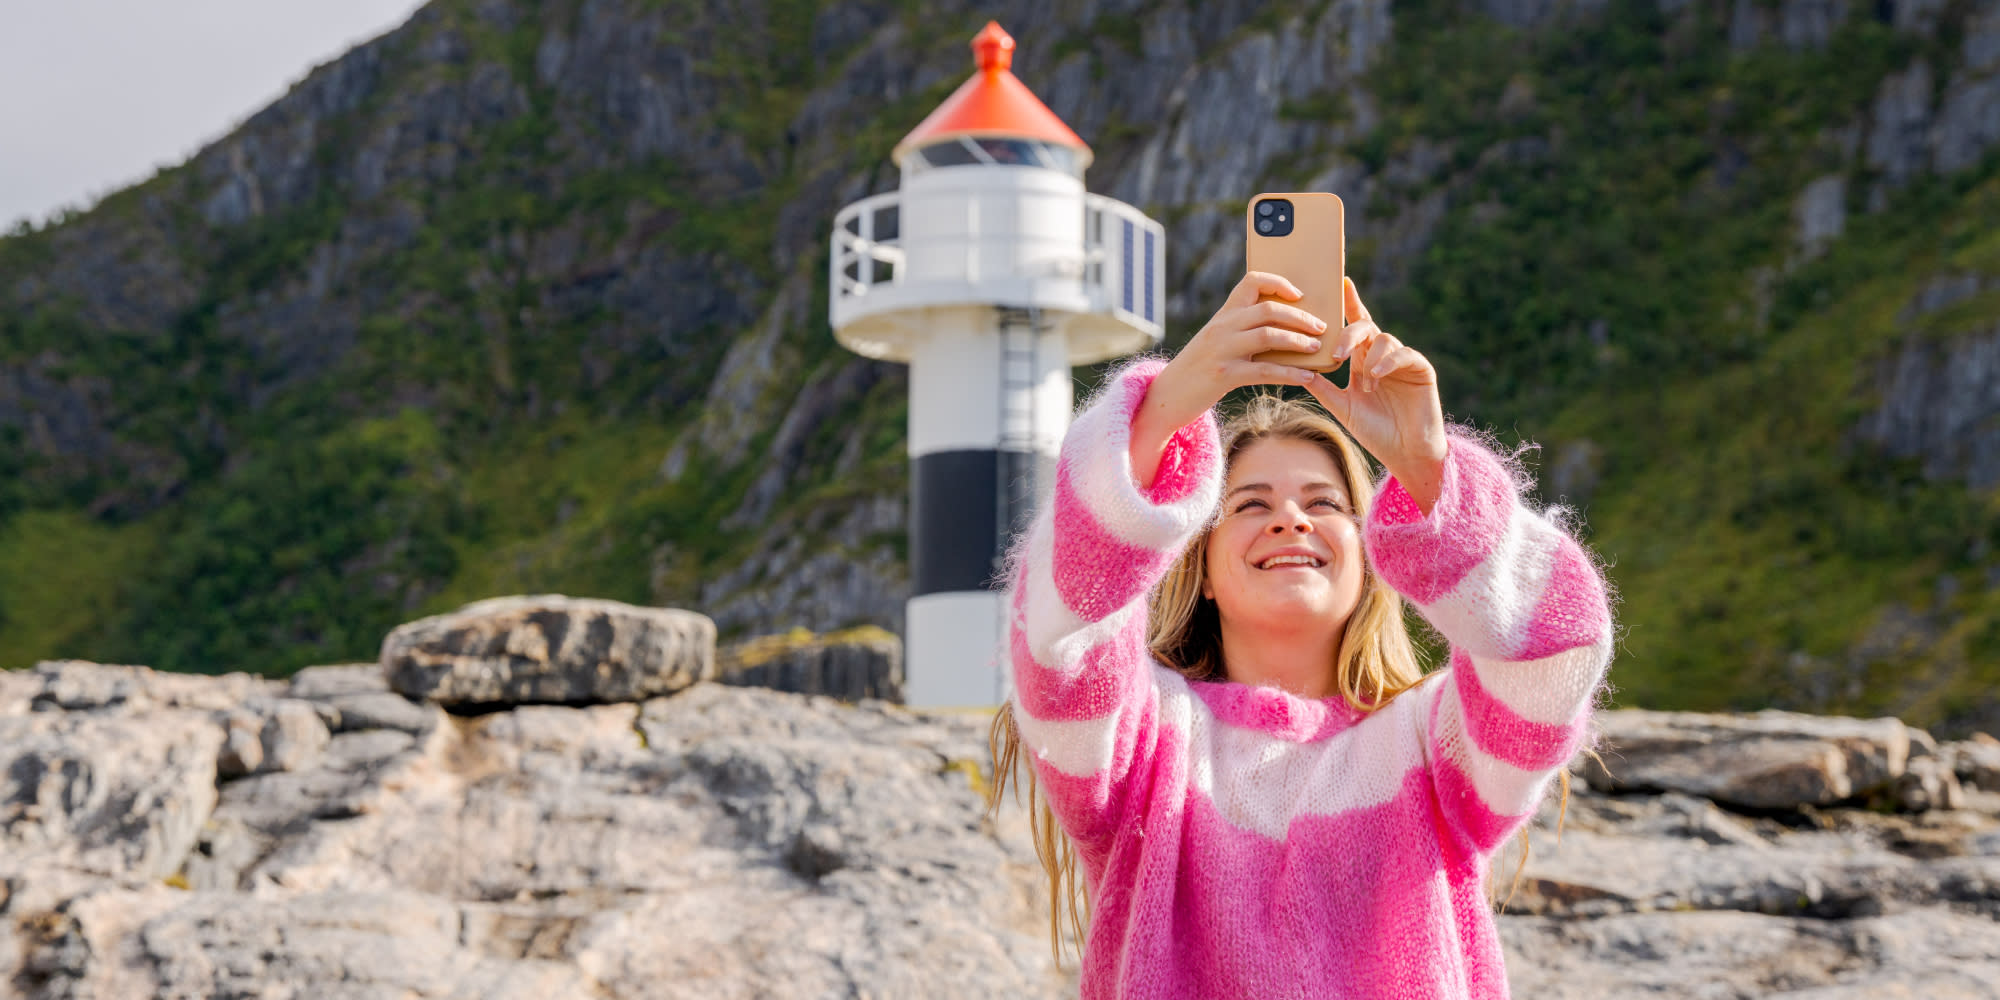 Urlaub In Norwegen Visit Norway Das Offizielle Reiseportal Für Sightseeing In Norwegen